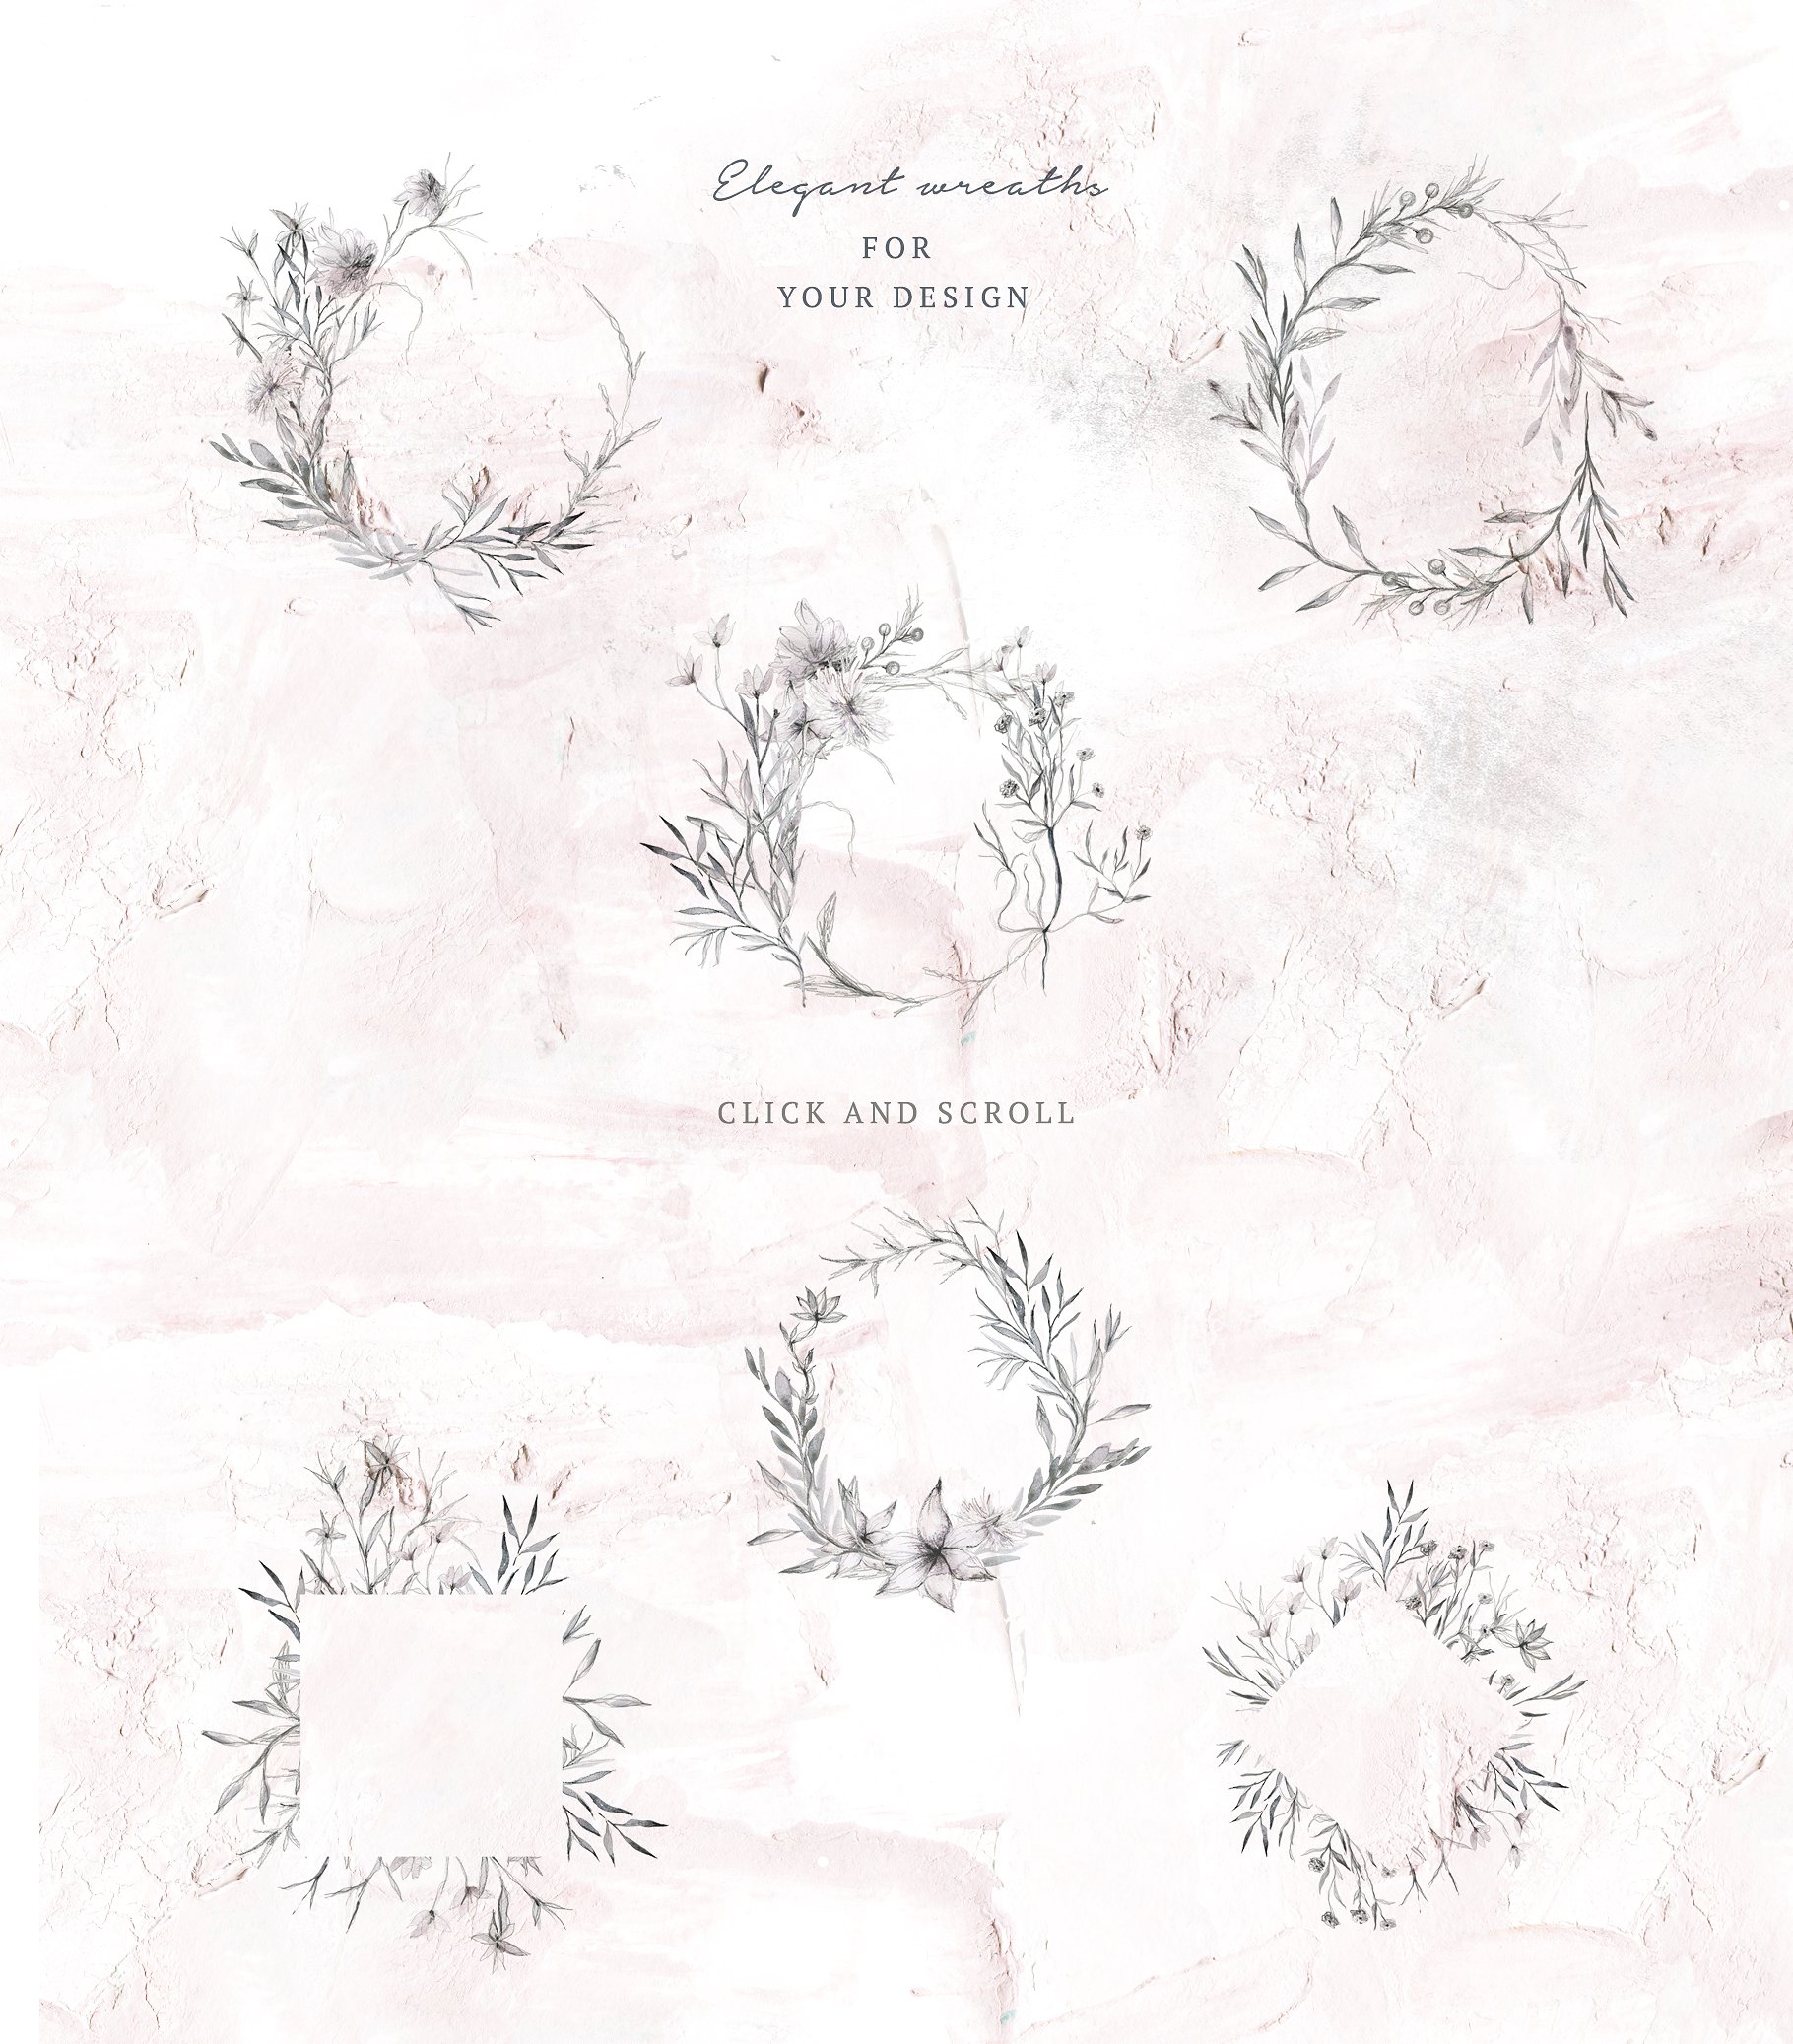 优雅的手绘植物花卉水彩画集 Elegant Hand Drawn Botanical Floral Watercolor Set插图8